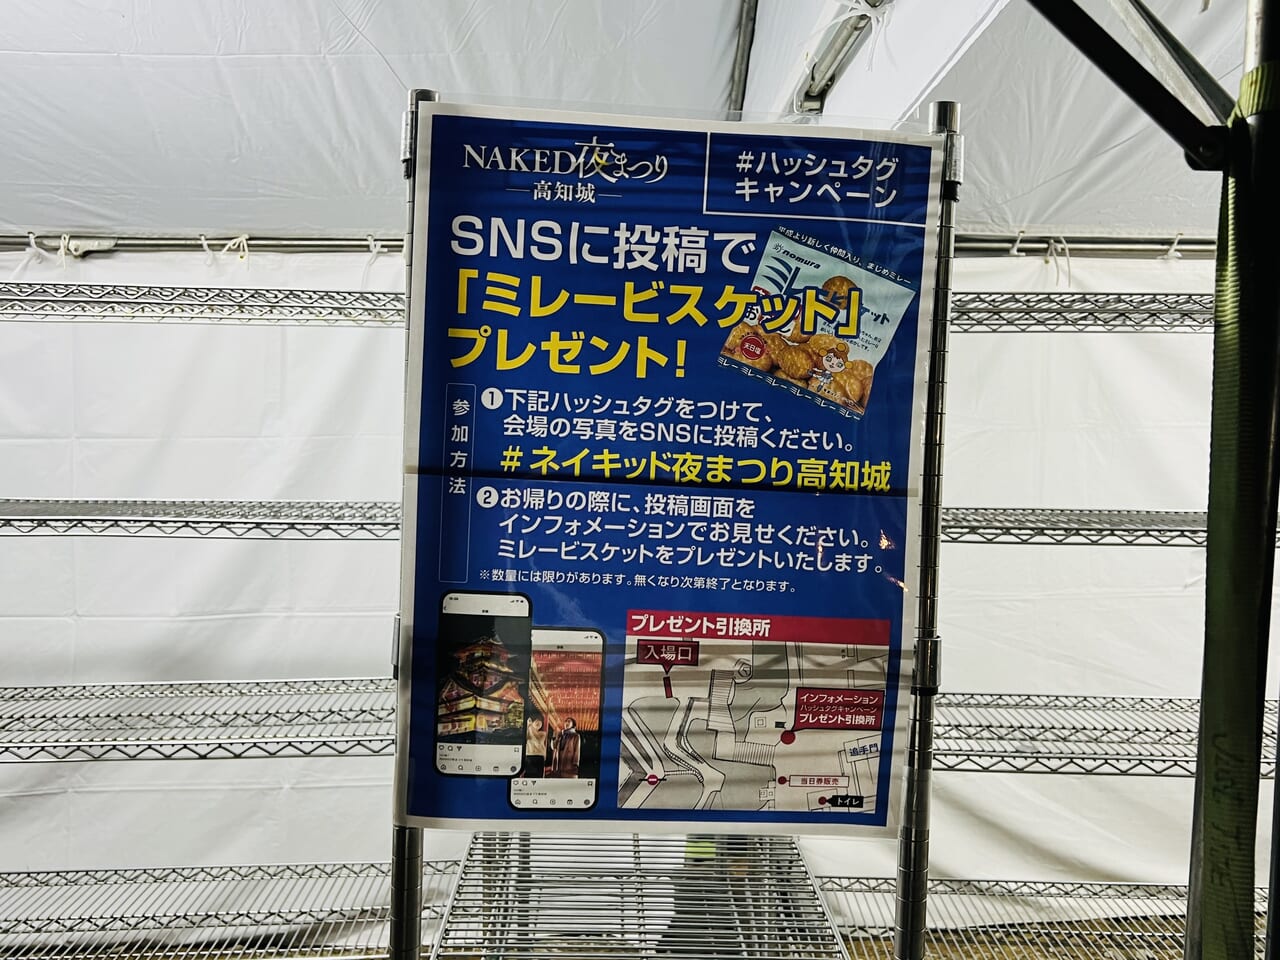 2023年冬に行われた「NAKED夜まつり 高知城」で展開されたミレービスケットプレゼントキャンペーン